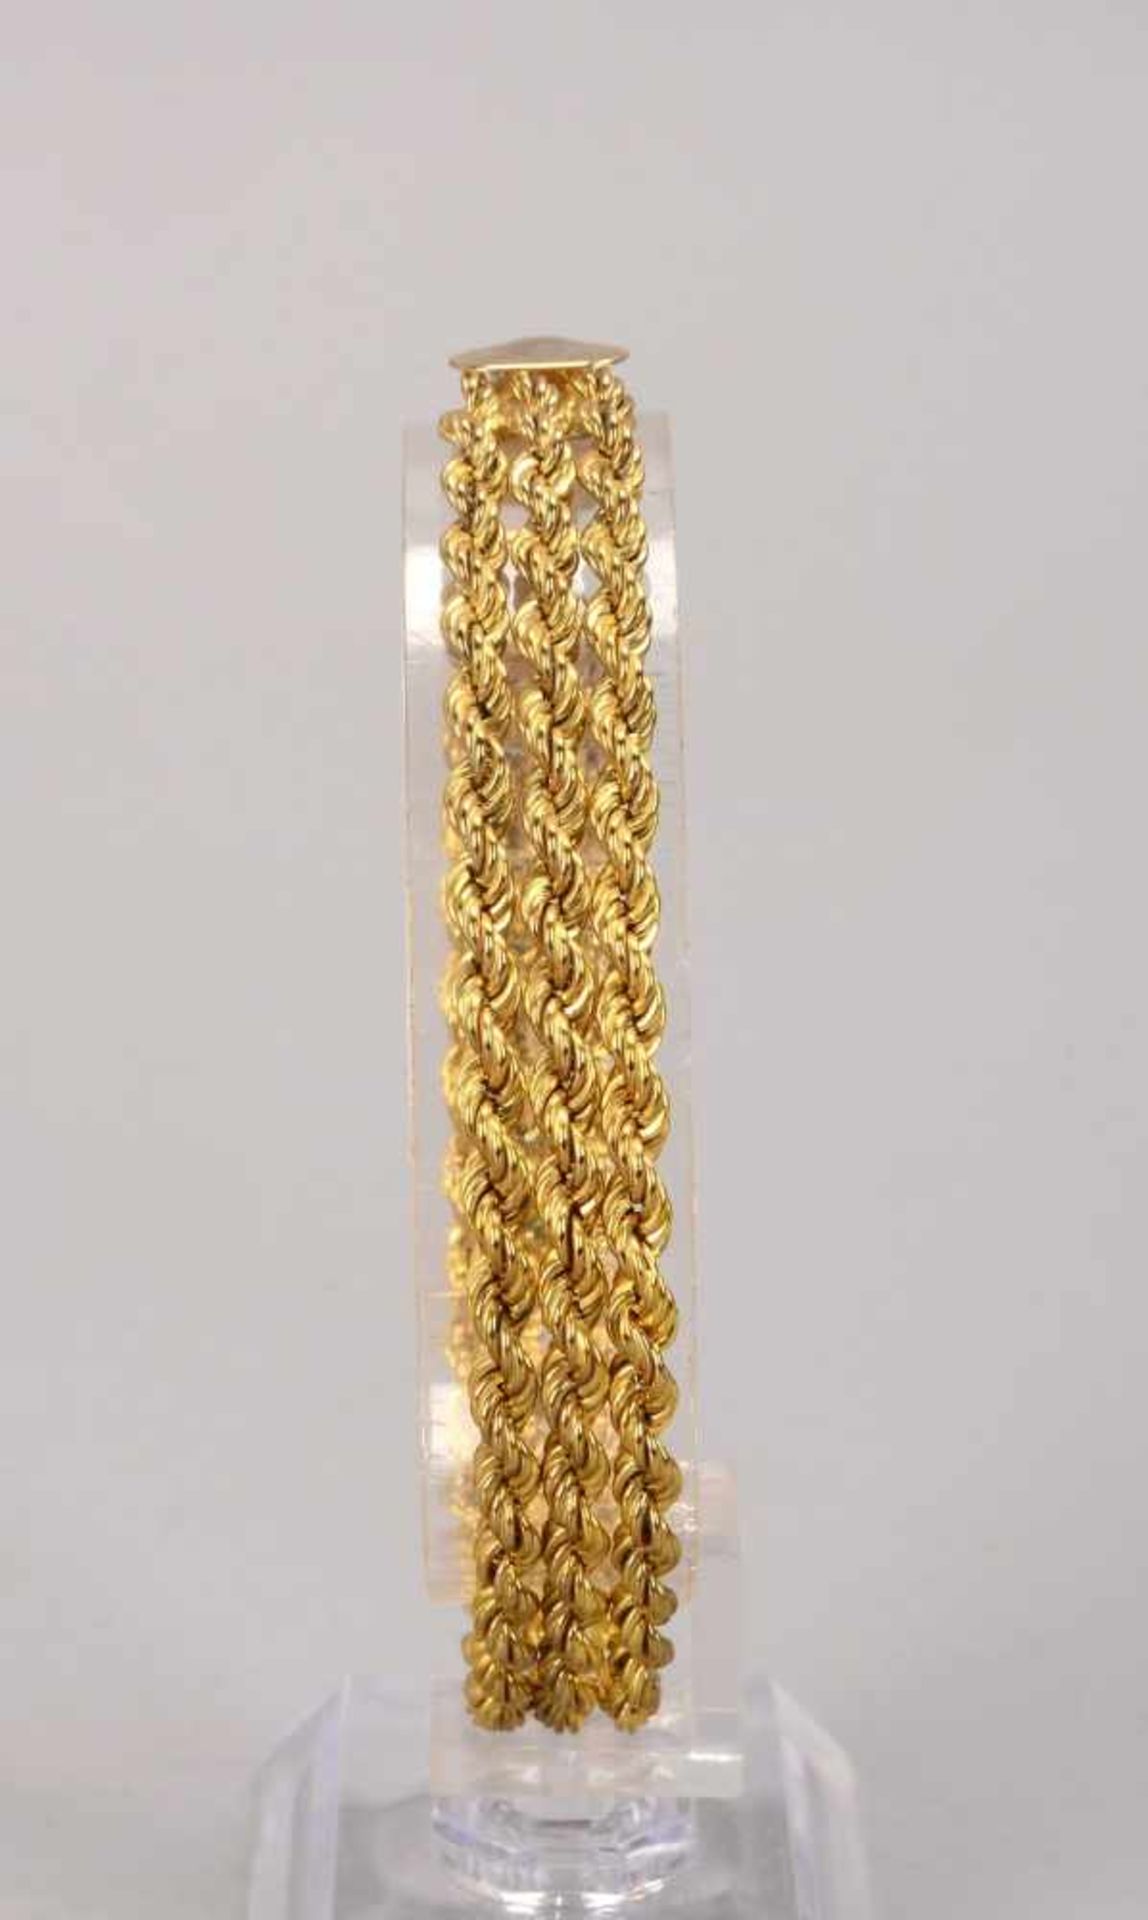 Armband, 333 GG, 3-reihig/geflochten, mit Karabinerschließe; Länge 19,5 cm, Gewicht 8,30 g - Bild 2 aus 2